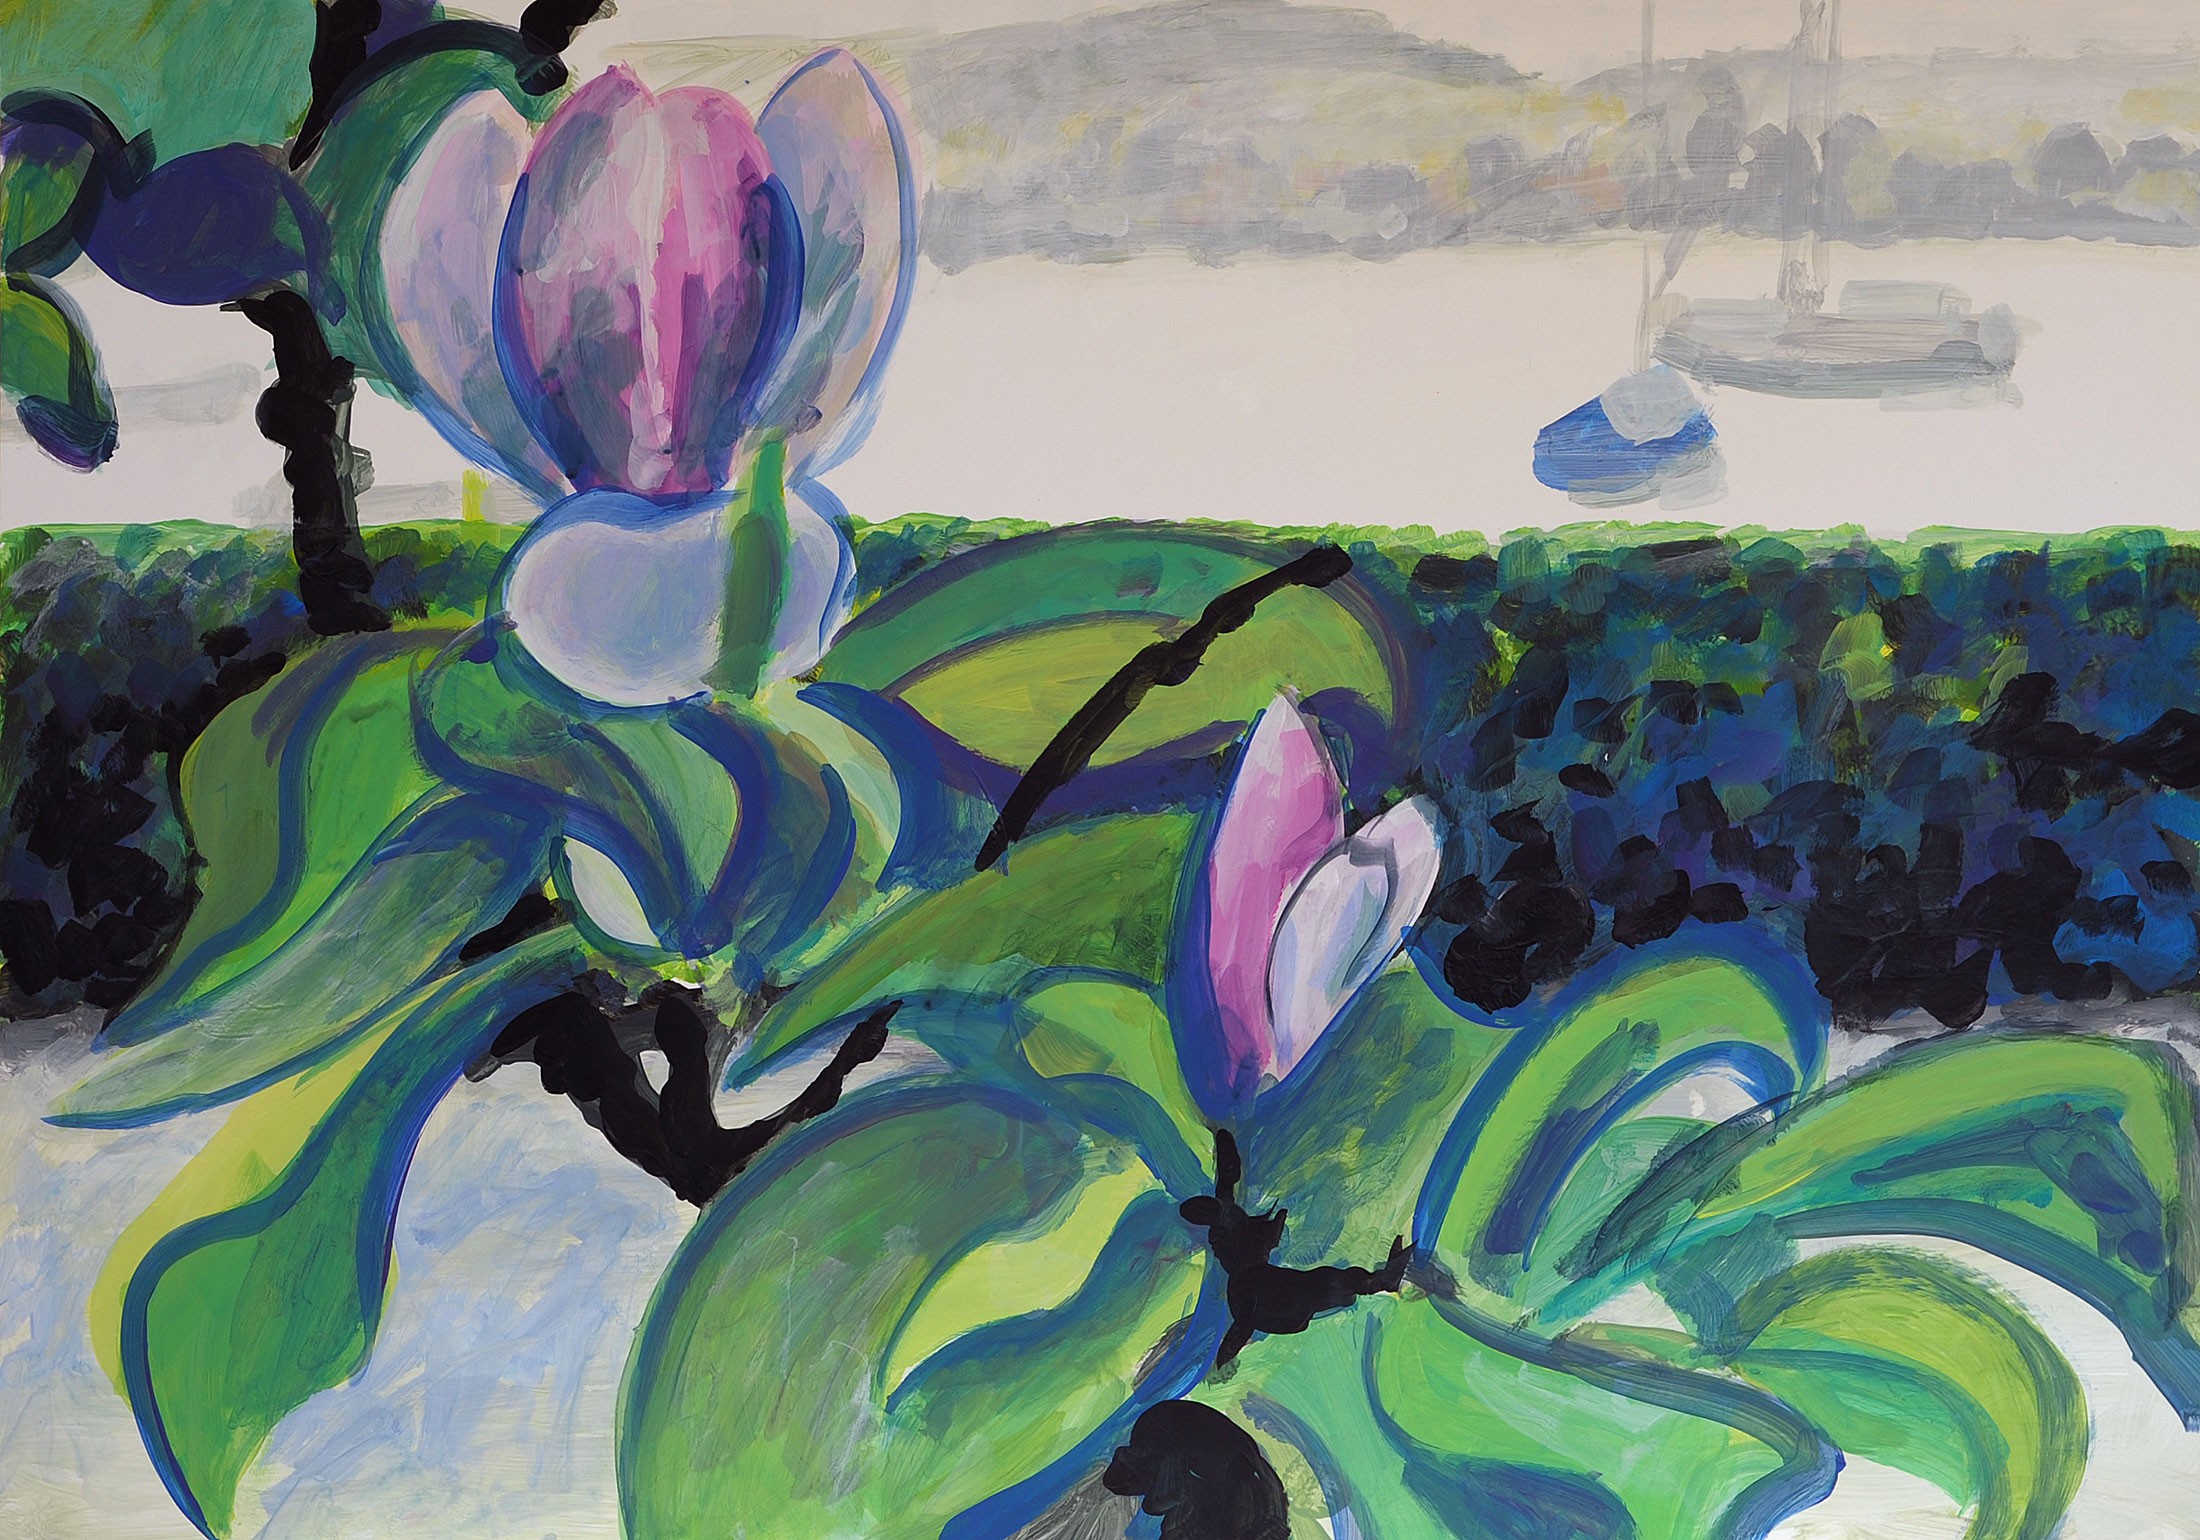 Christoph Leuthold Landschaft, Bilder, Gemälde, Malerei in Acryl und Aquarell: Aktuelle Ausstellung Magnolien im Arboretum, 2016
Acryl auf Karton
100 x 70 cm